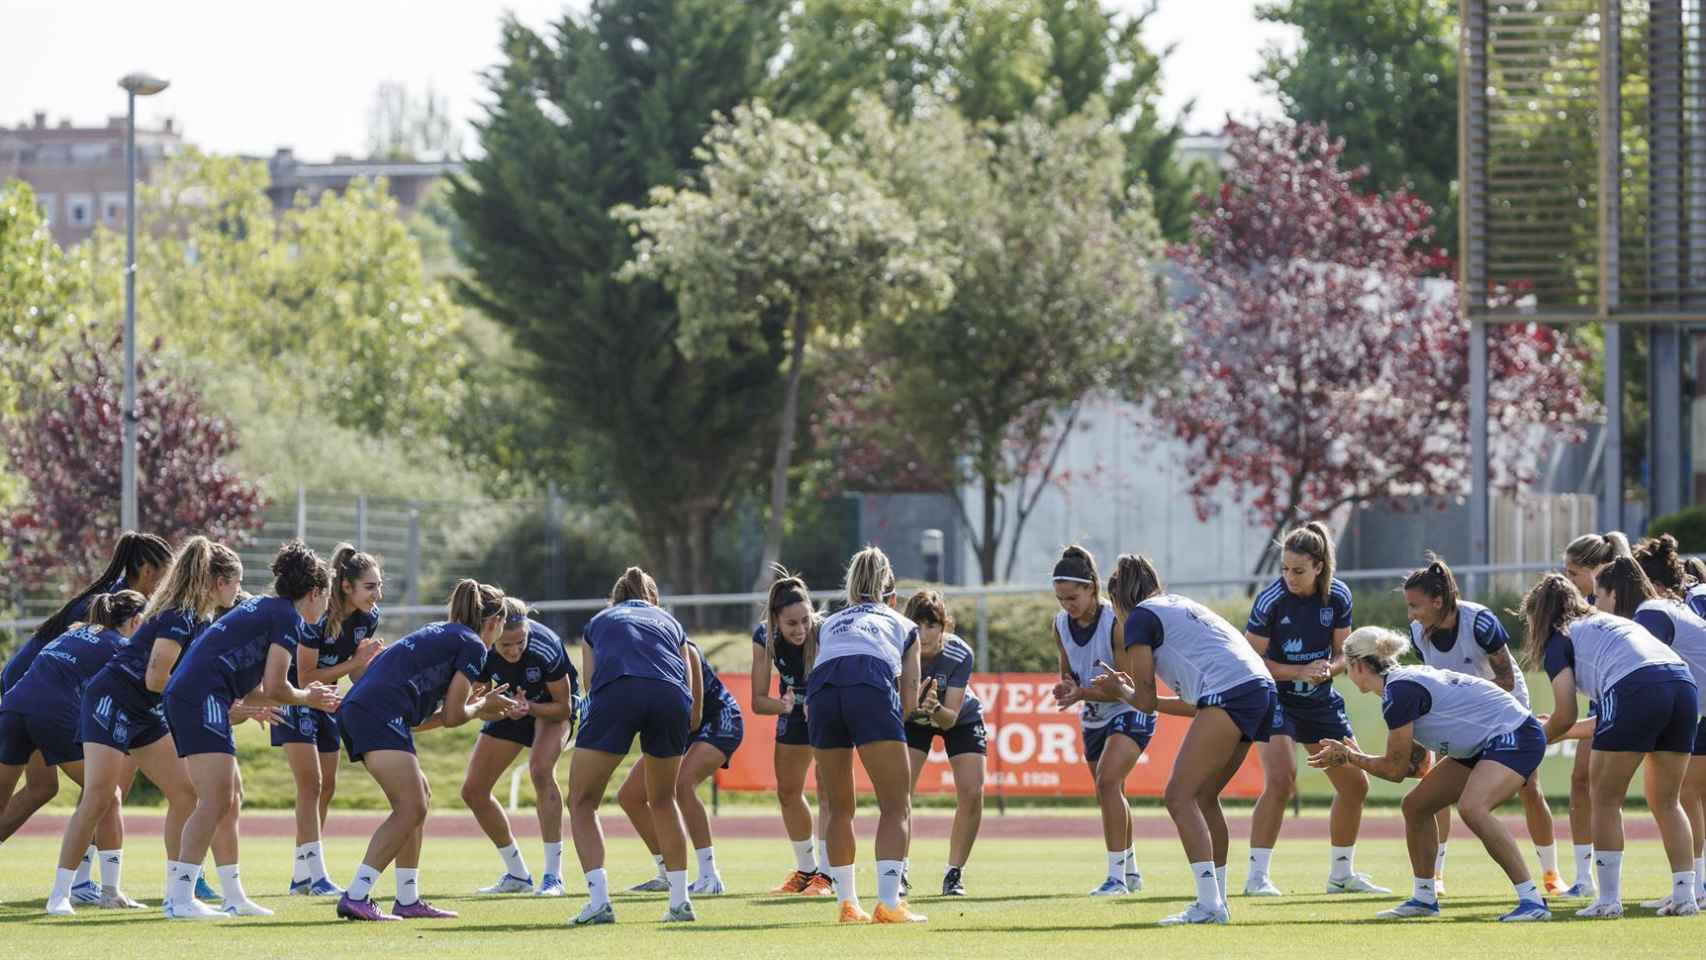 Entrenamiento de la selección española de fútbol femenino en Las Rozas